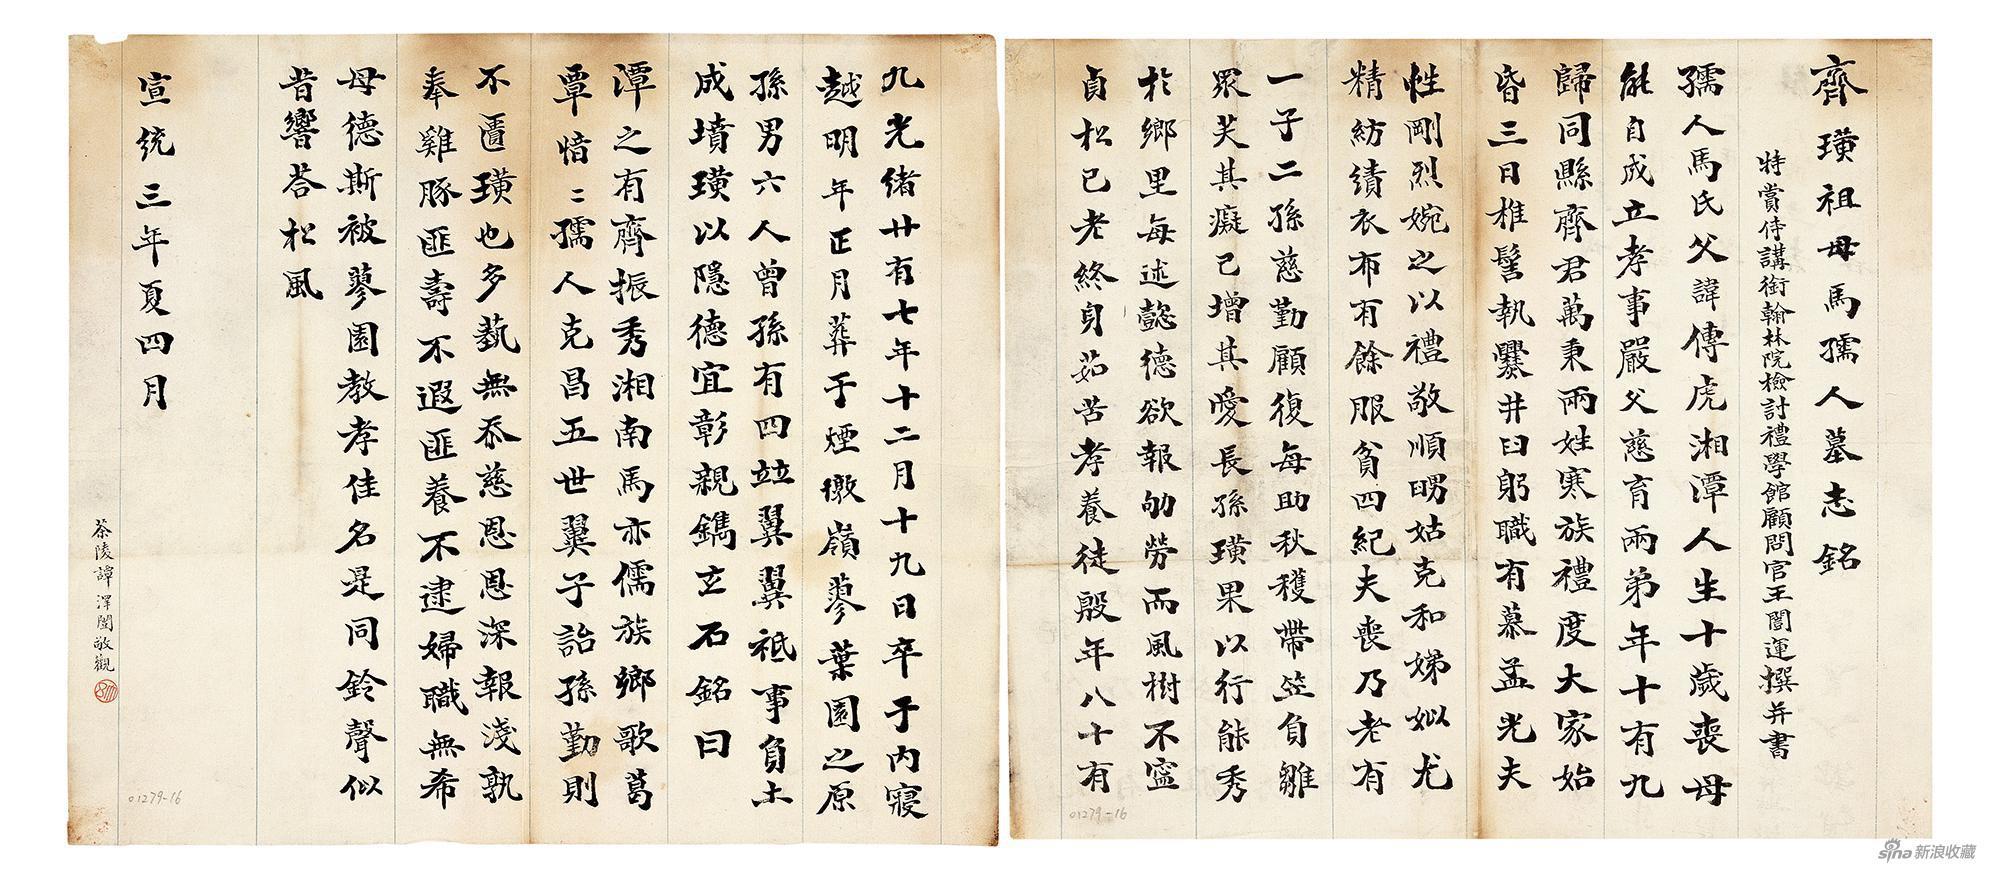 齐璜祖母马孺人墓志铭 王闿运 1911年 31.8×35.5cm×2 纸本墨笔 北京画院藏